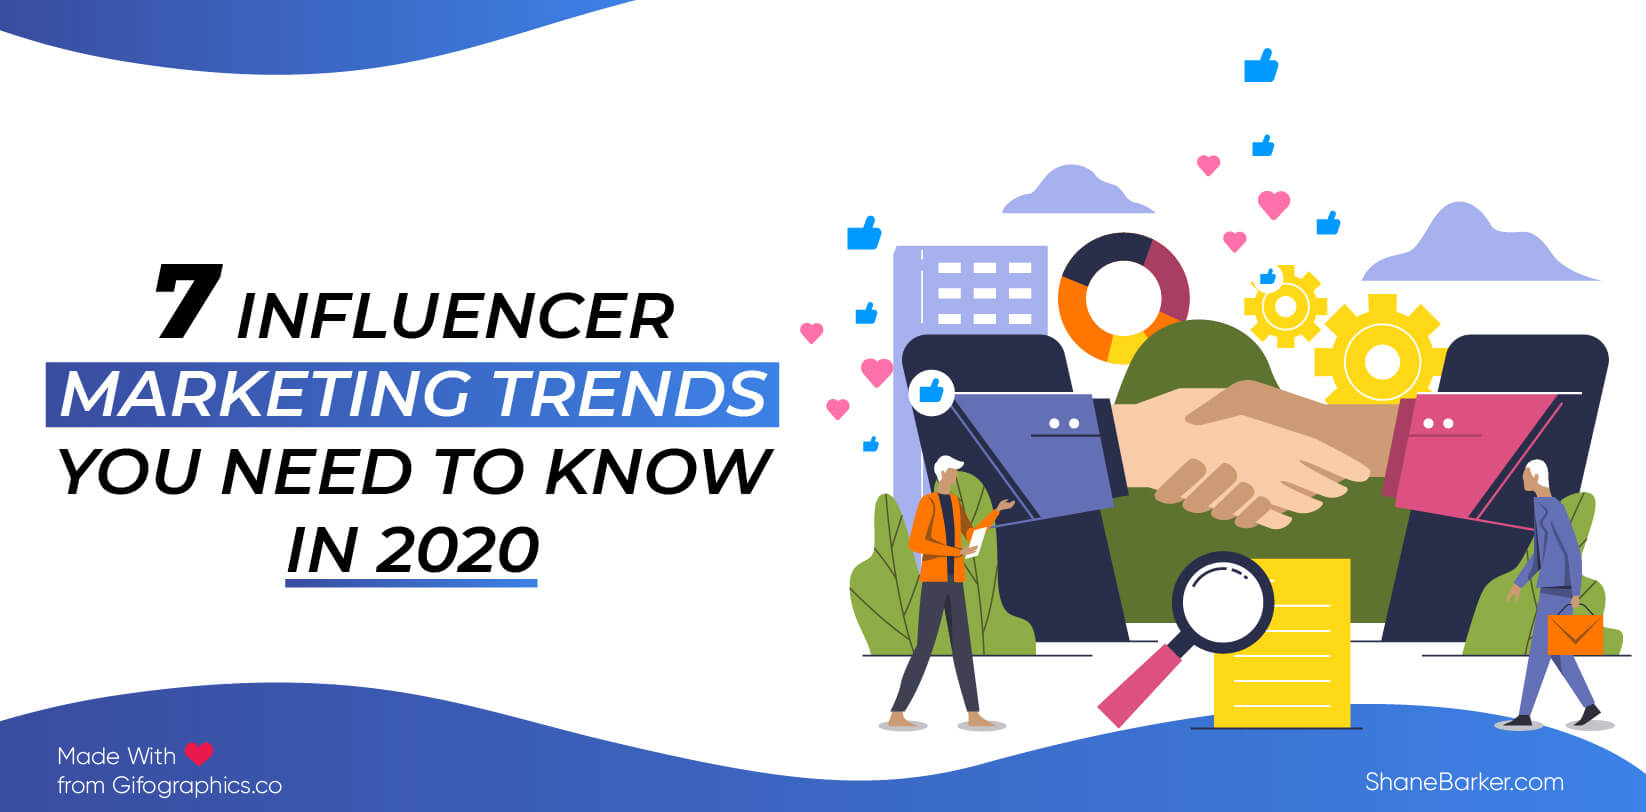 7 tendencias de marketing de influencers que debes conocer en 2020 (actualizado en octubre)